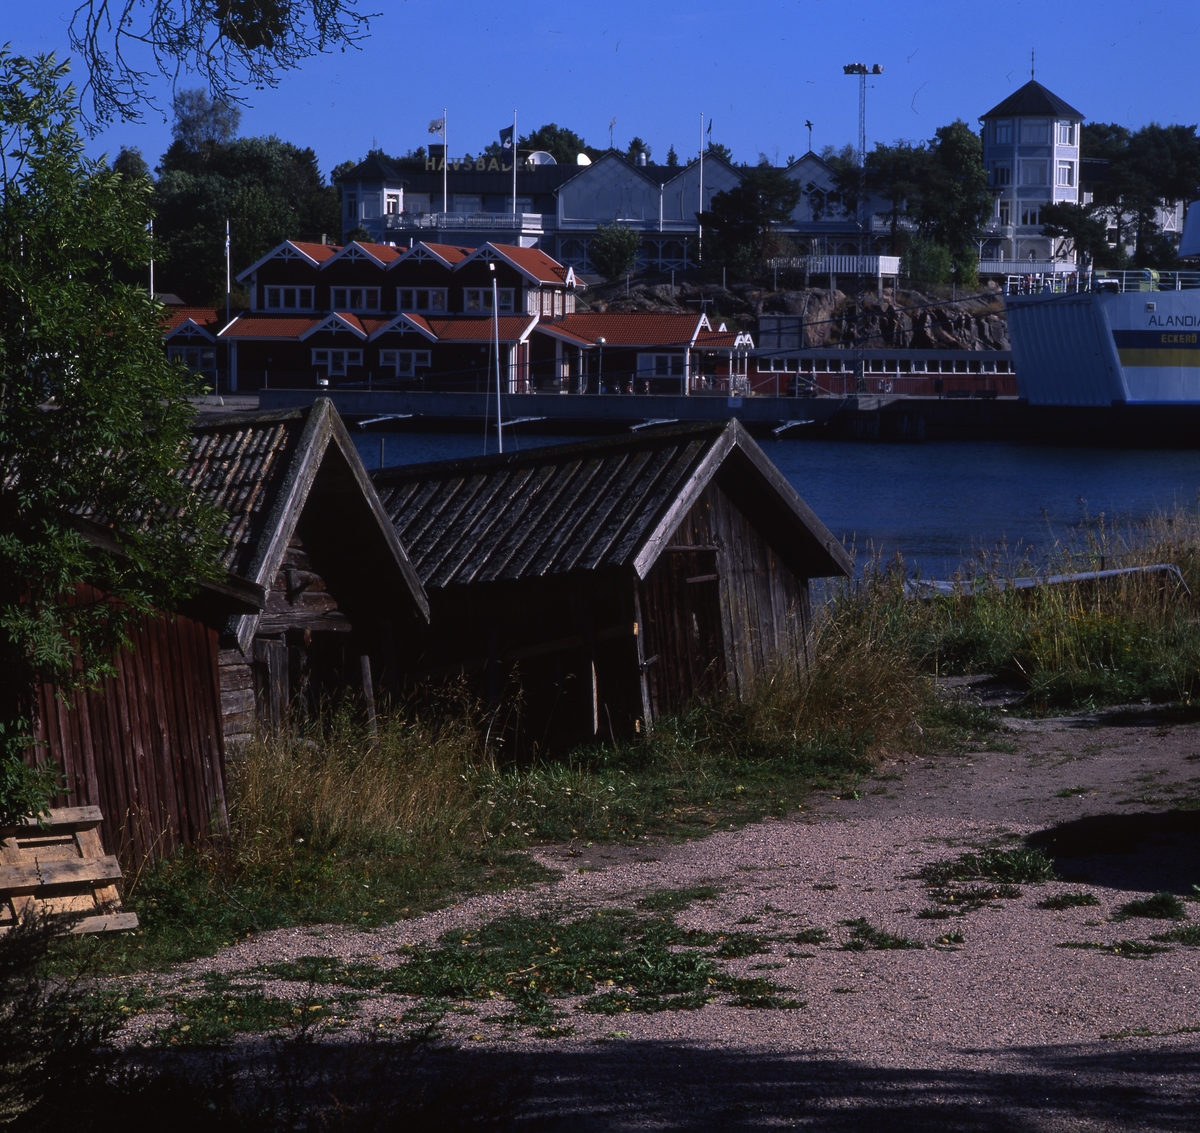 Fogdö, en ö i norra Roslagen, 2-3 september 1999.  Här ser vi sjöbodar vid vattnet och Hotell Havsbaden i bakgrunden.